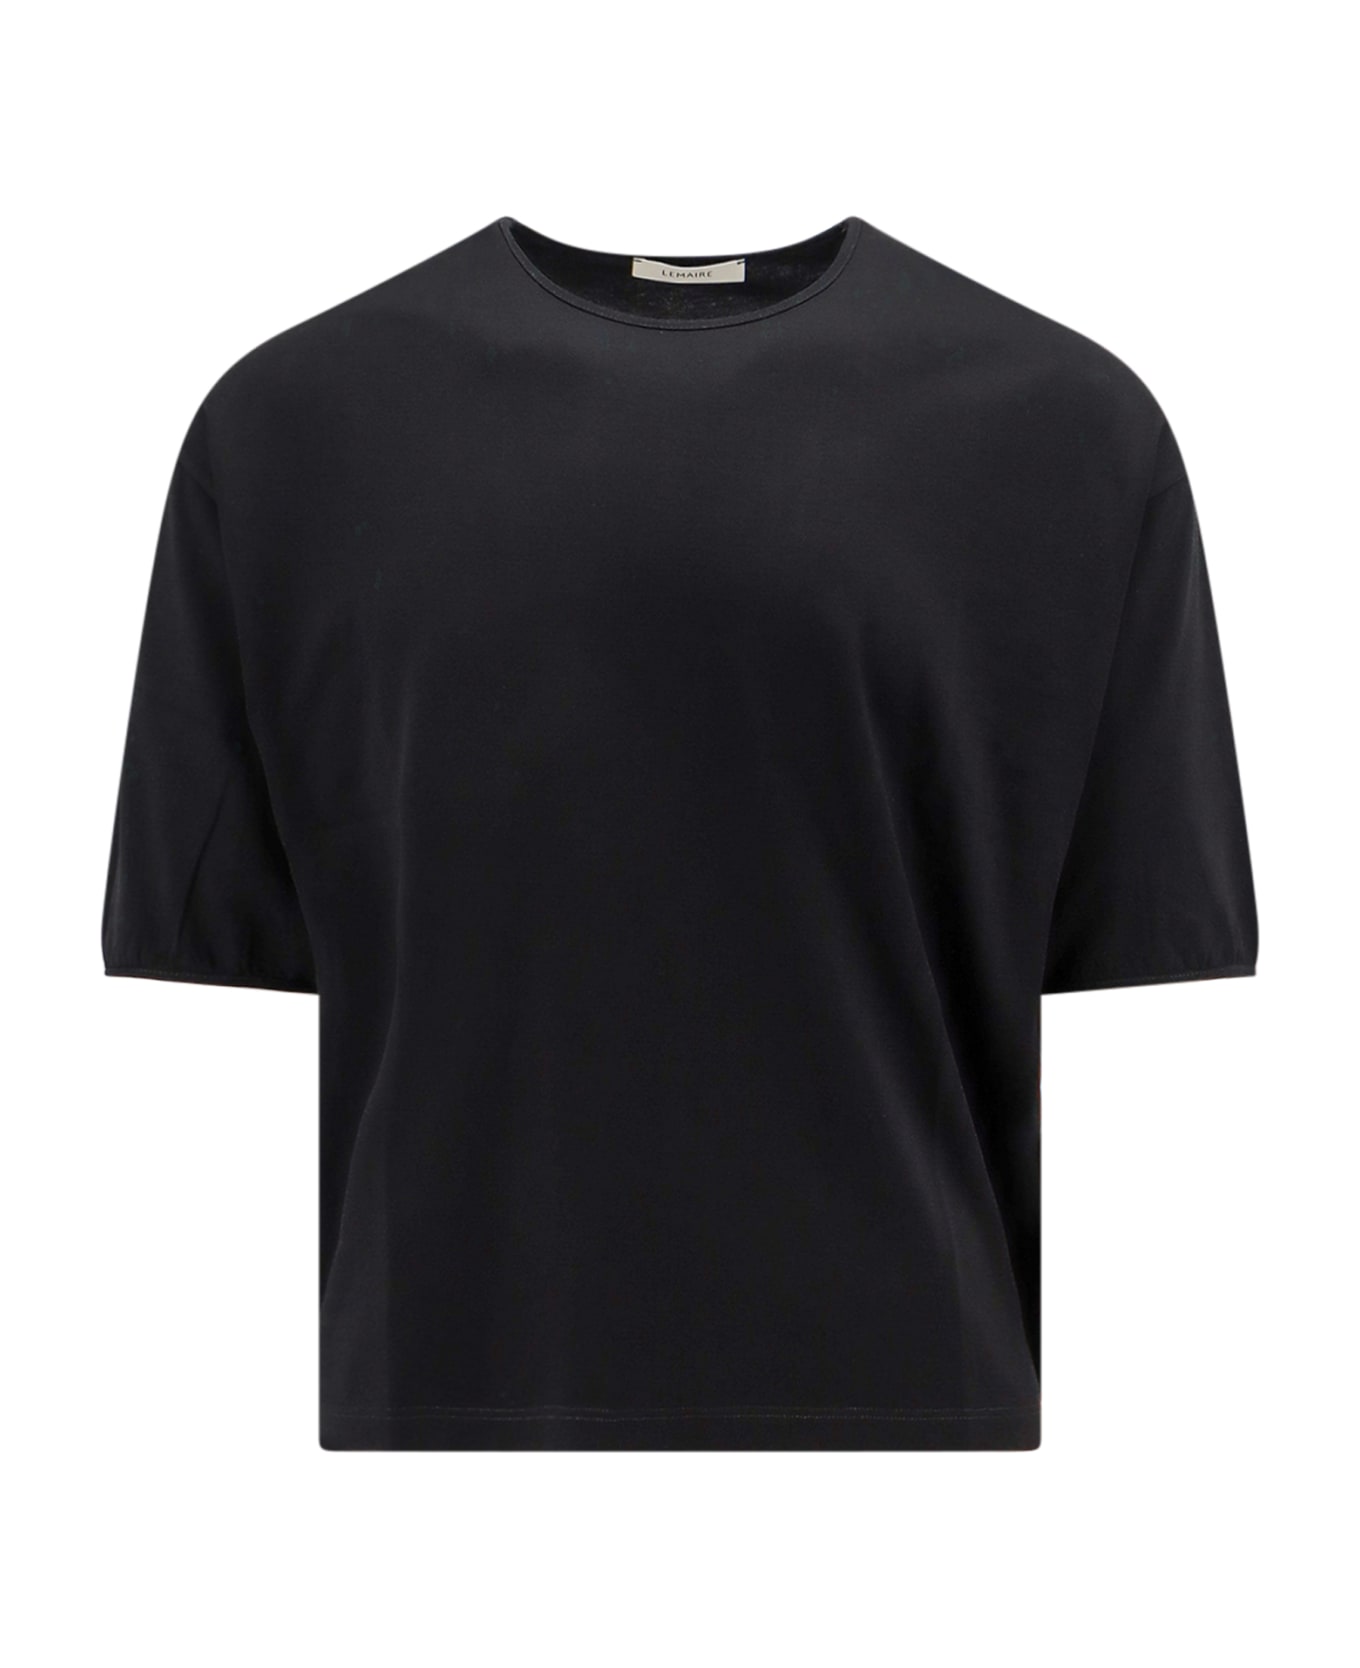 Lemaire T-shirt - BLACK